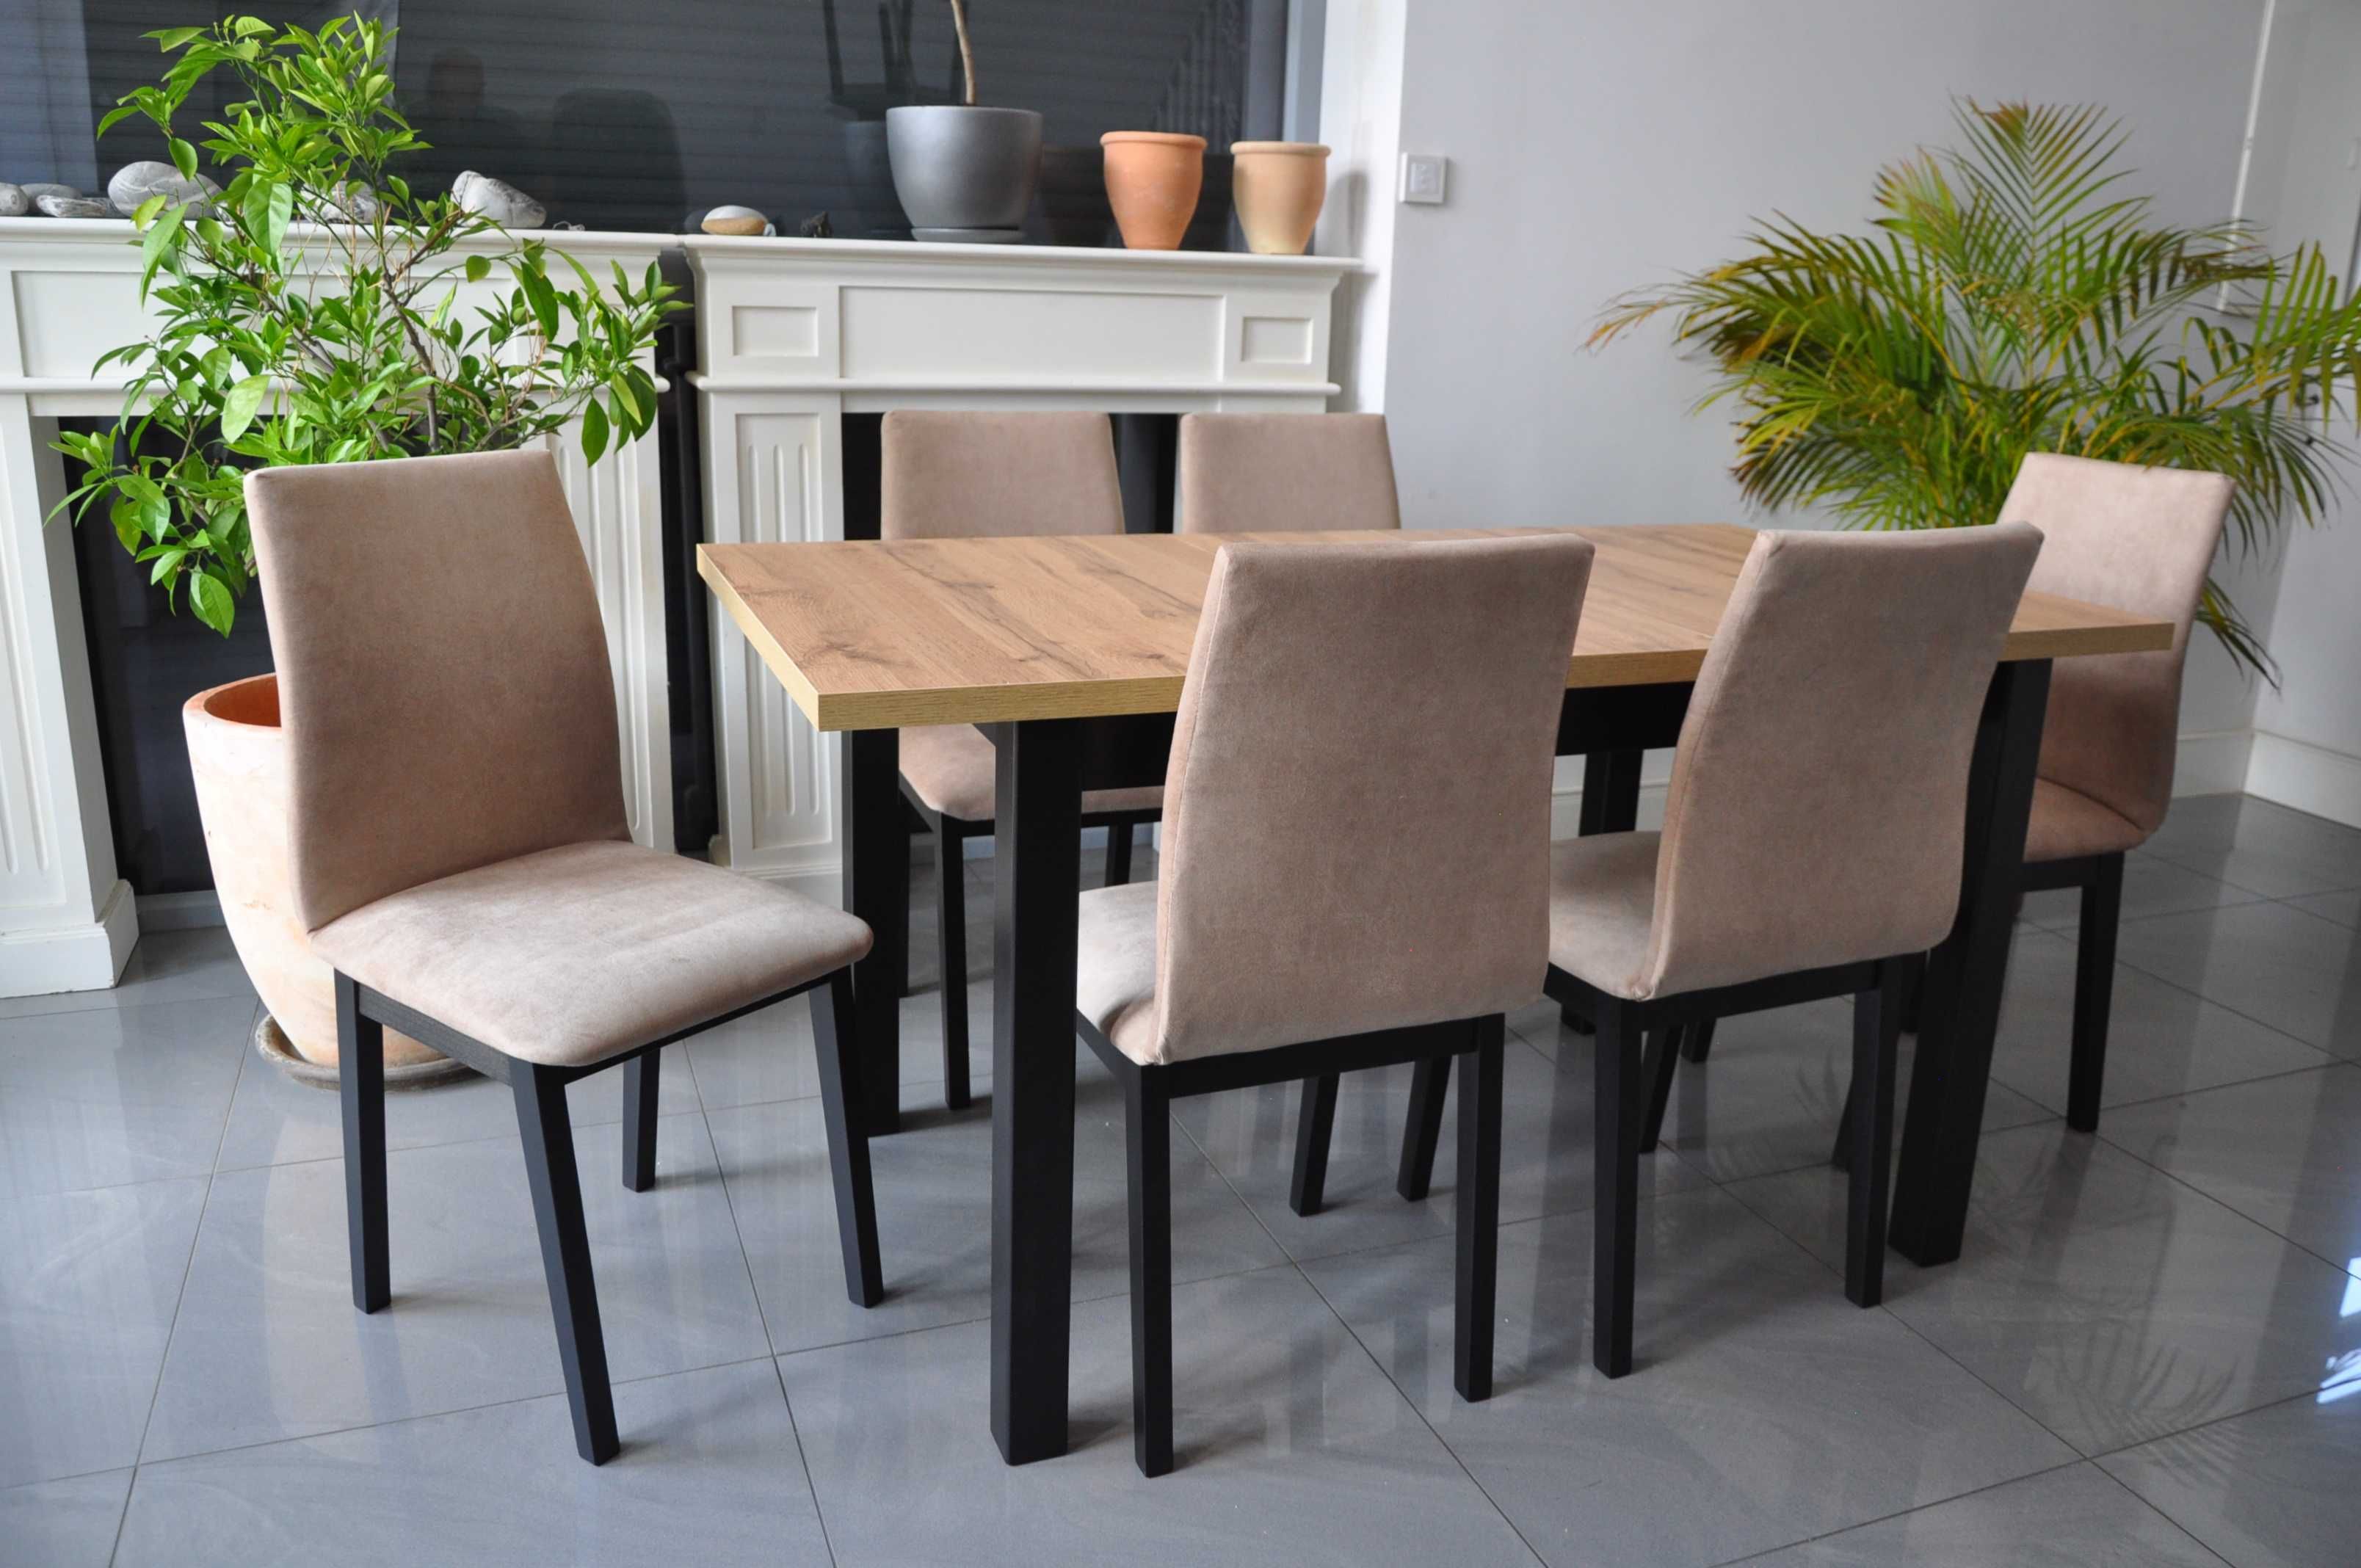 PROMOCJA - Zestaw Elegant Stół Rozkładany + 4 Krzesła